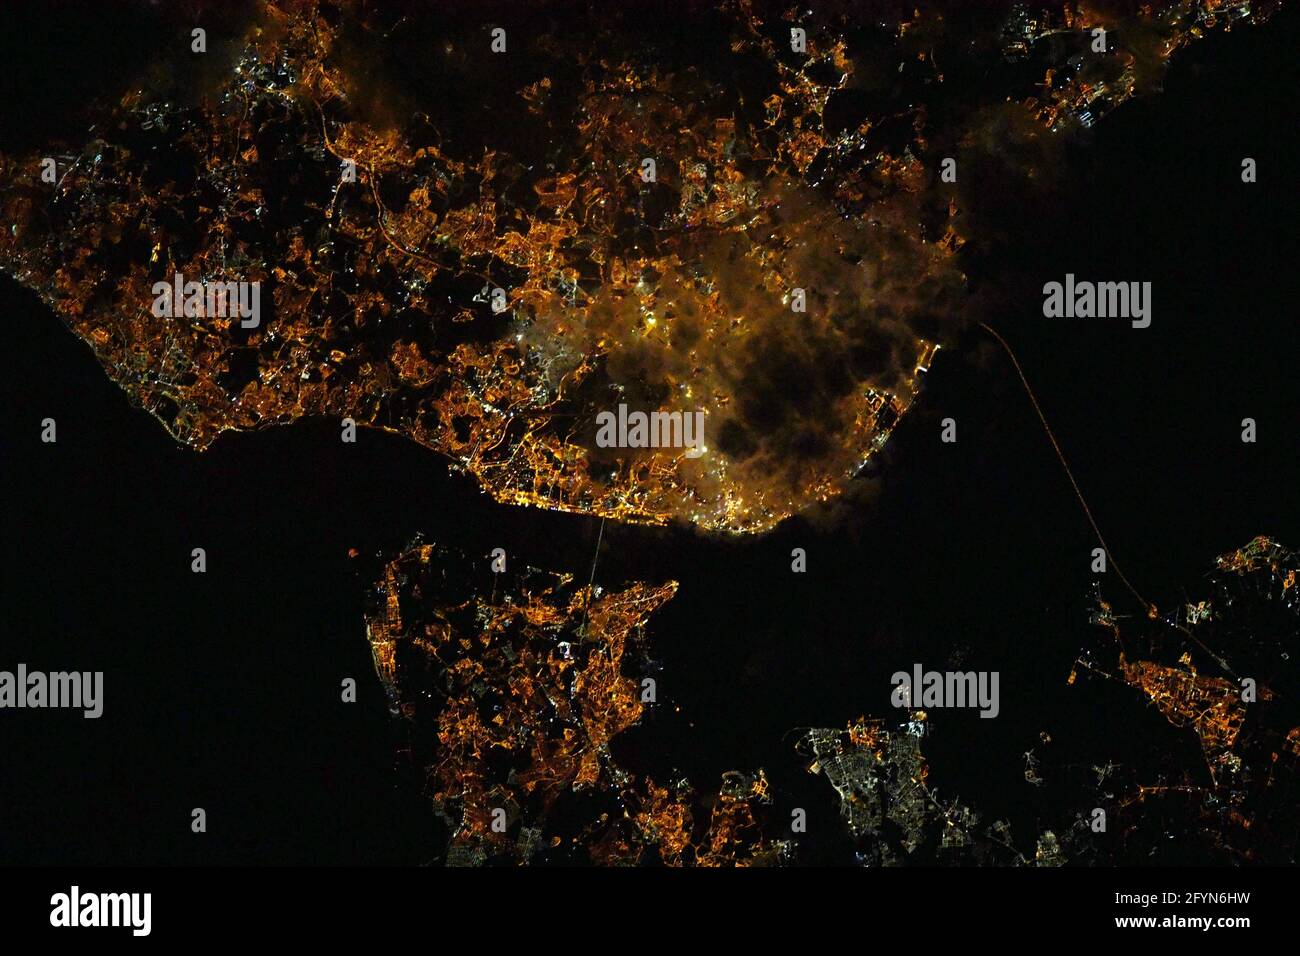 LISBONA, PORTOGALLO - 08 maggio 2021 - questa splendida vista notturna di Lisbona, il Portogallo, è stato catturato da un astronauta sulla Stazione spaziale Internazionale - Foto: Foto Stock